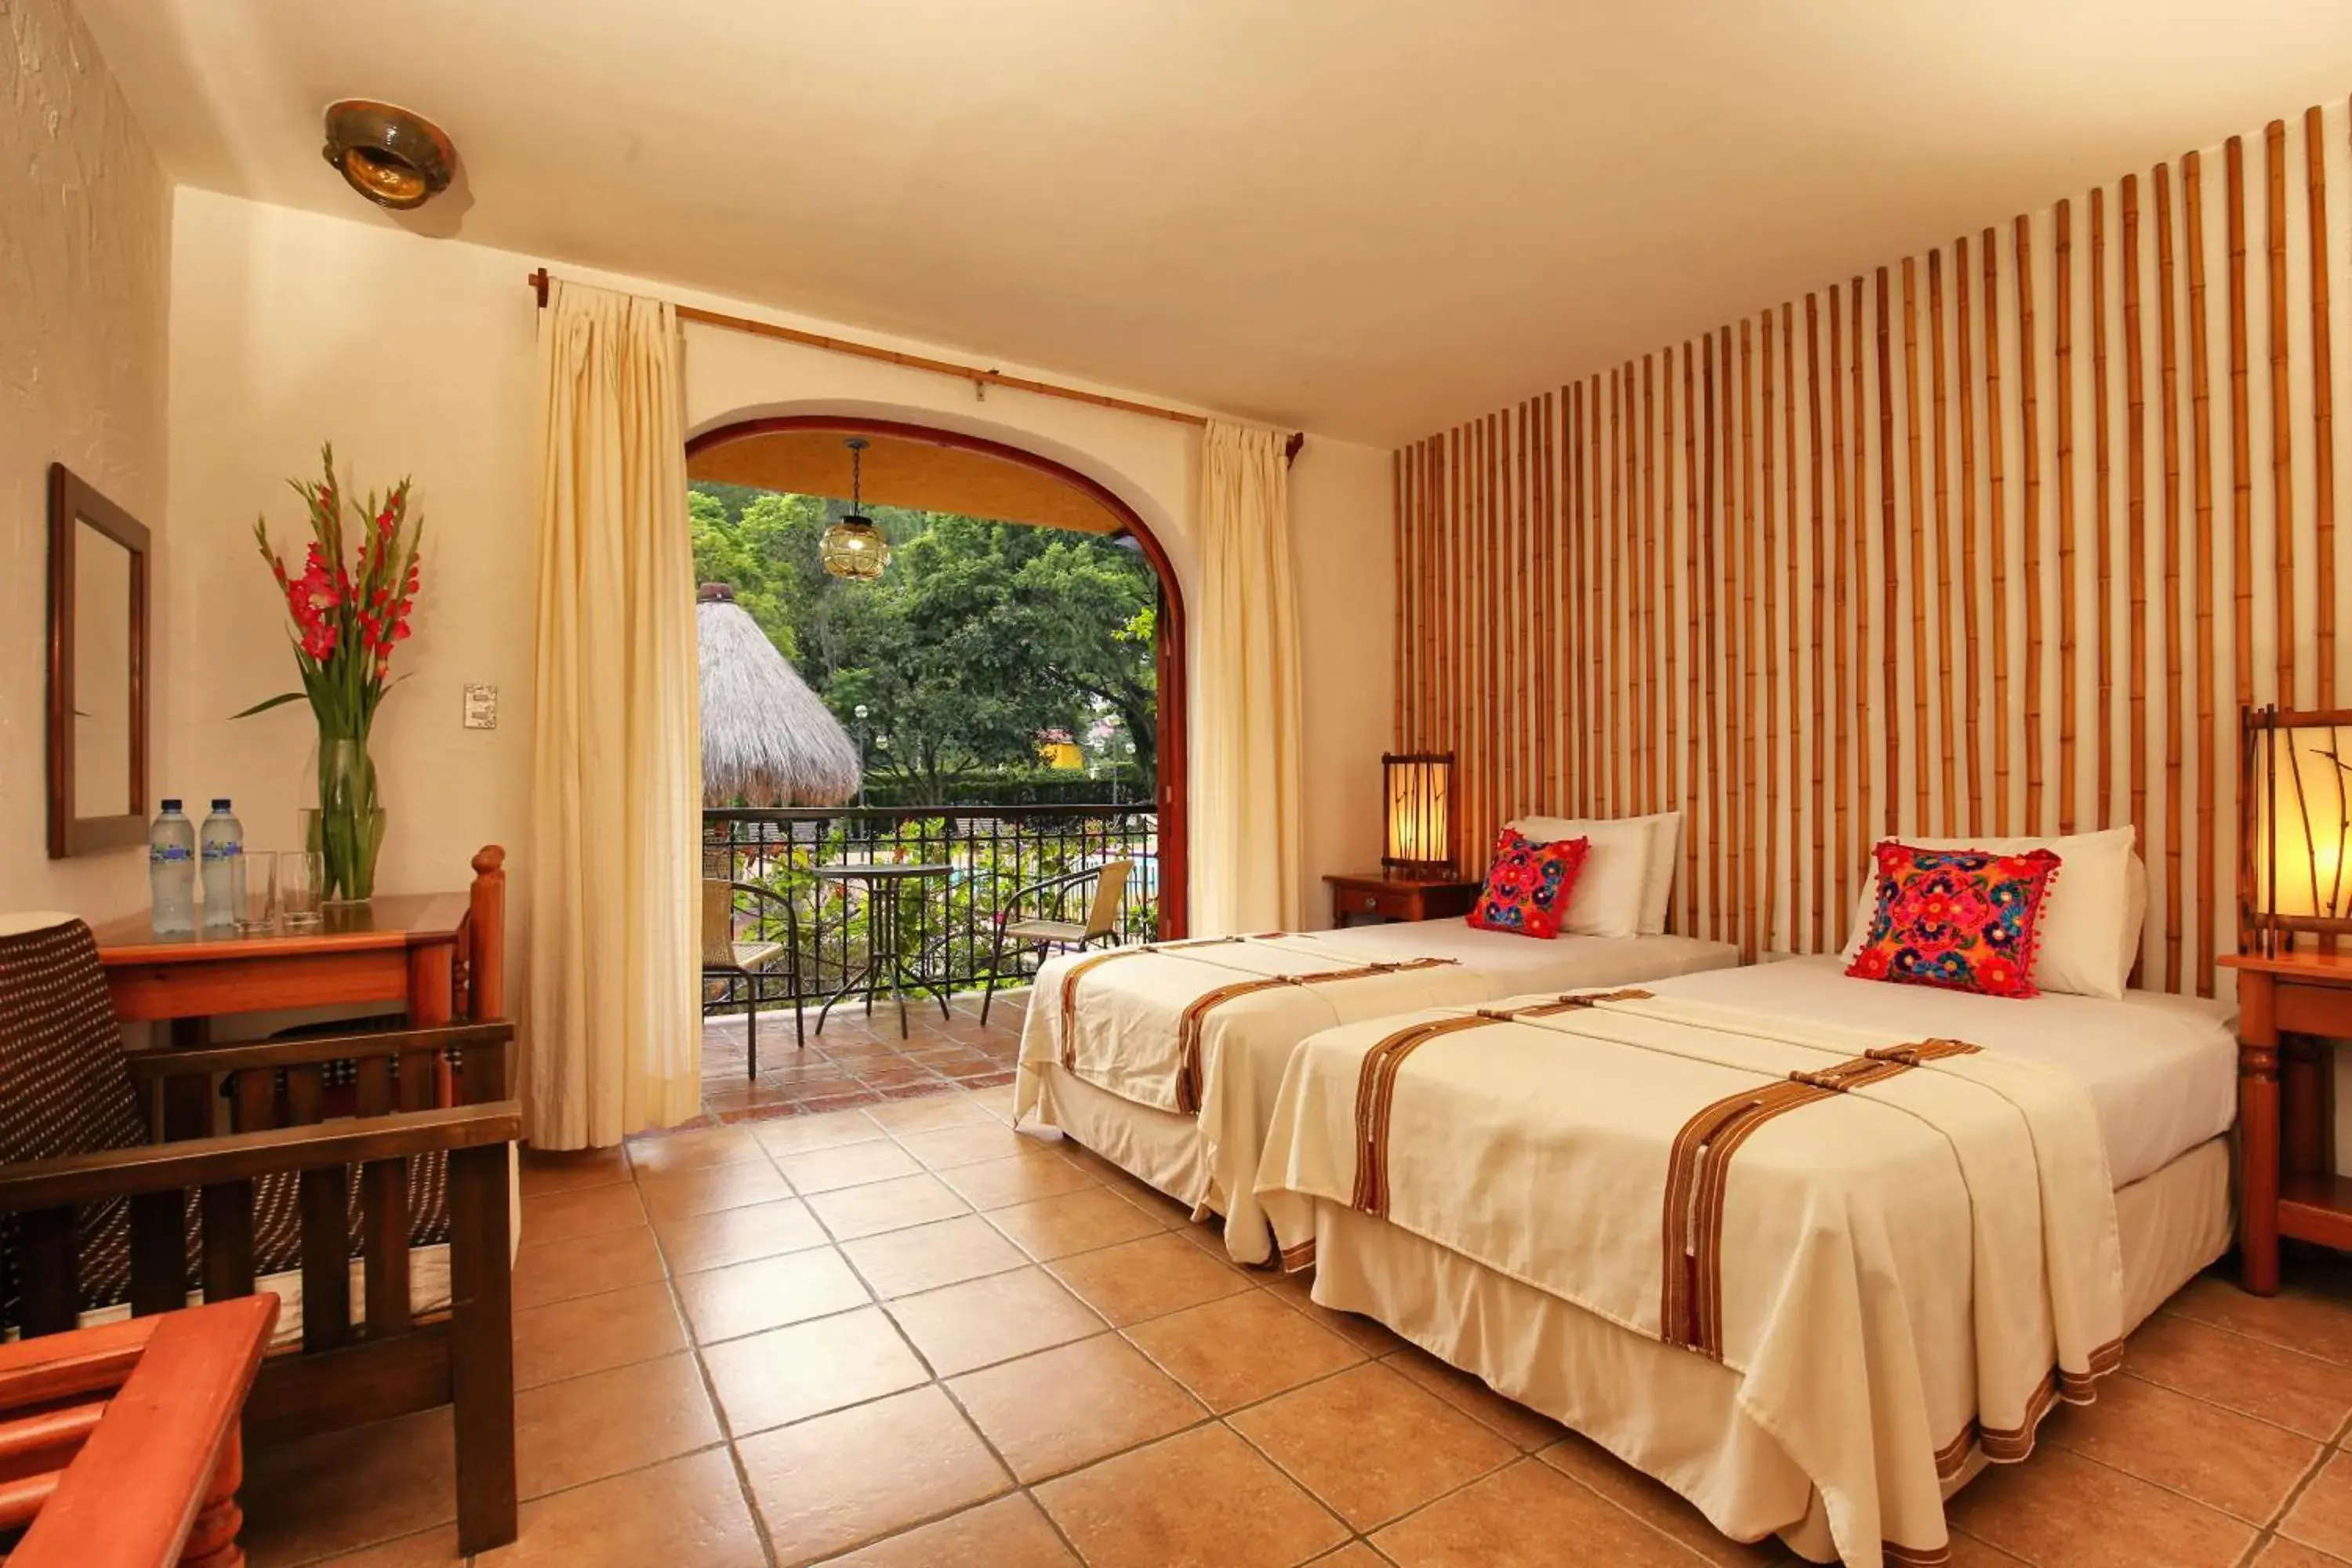 Bedroom in Villa Santa Catarina